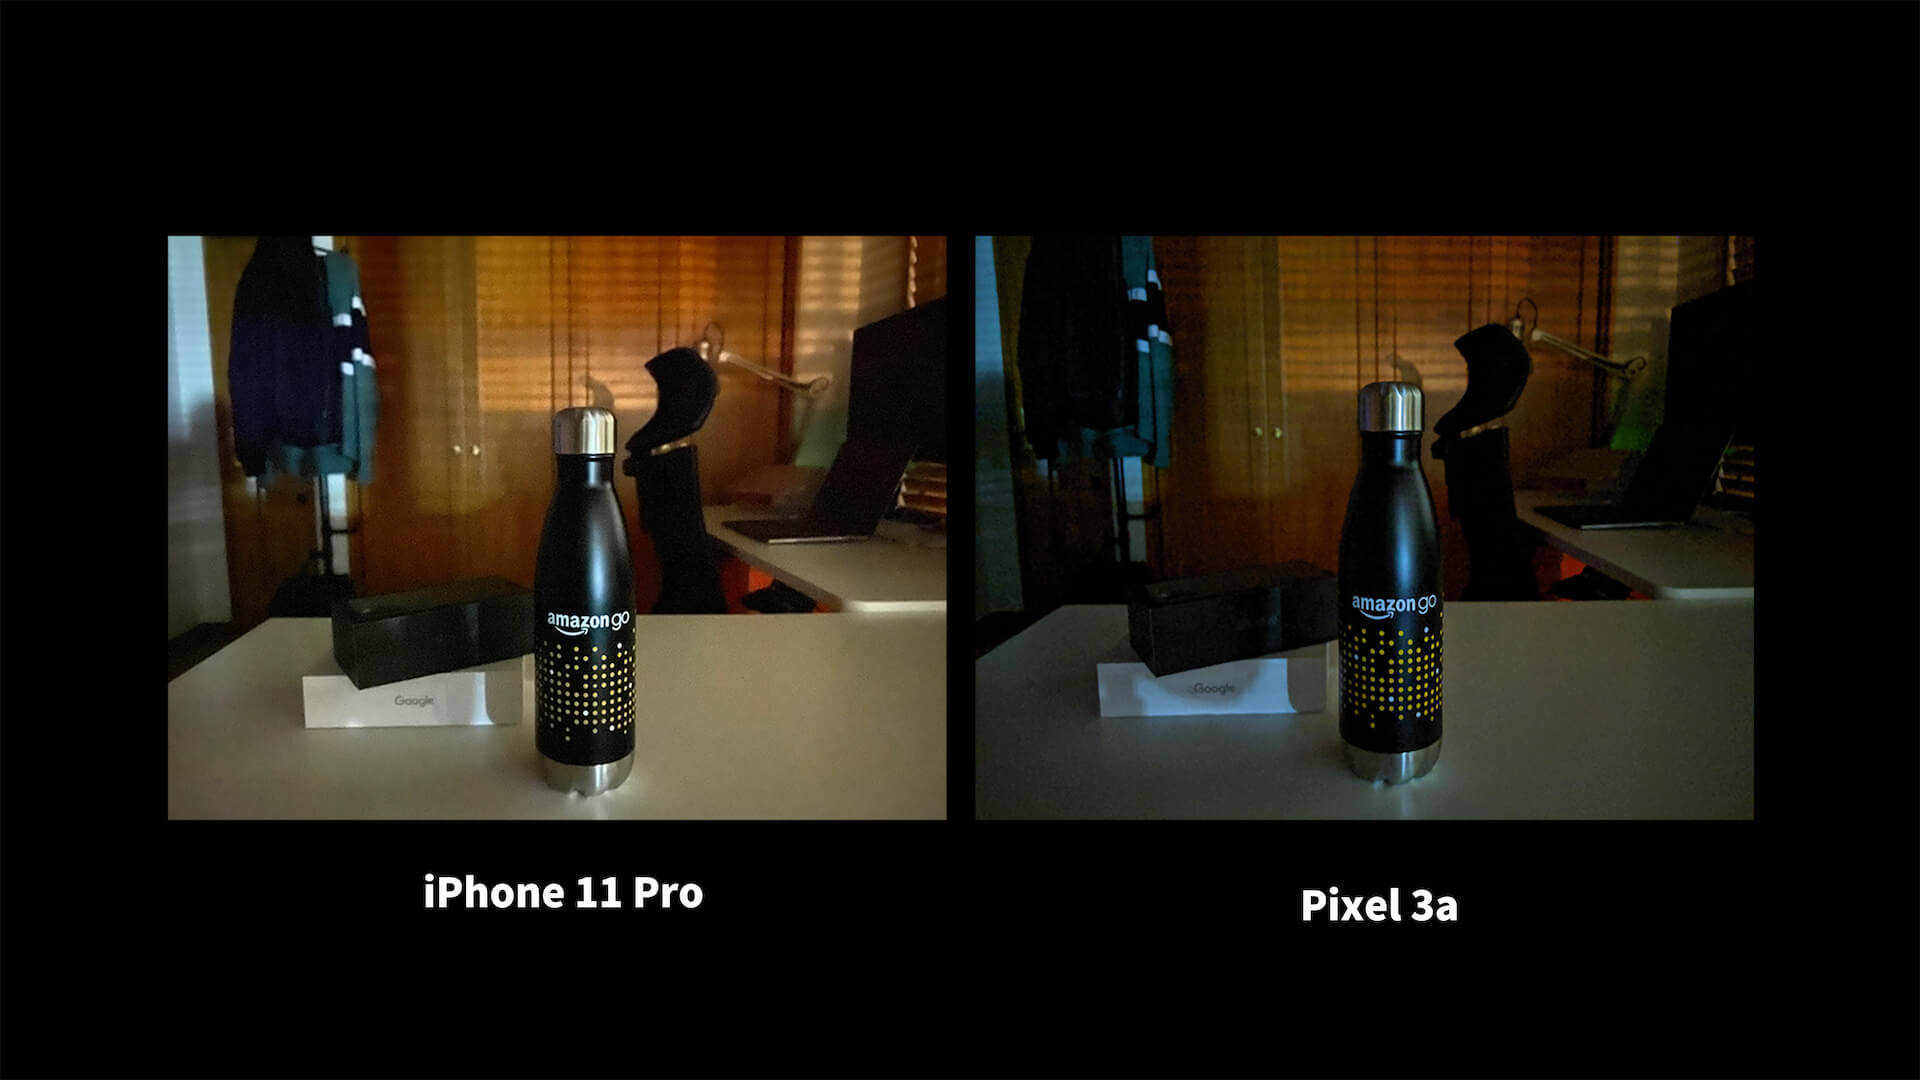 iPhone 11 Pro Pixel 3a ナイトモード 比較 Amazon GO 水筒